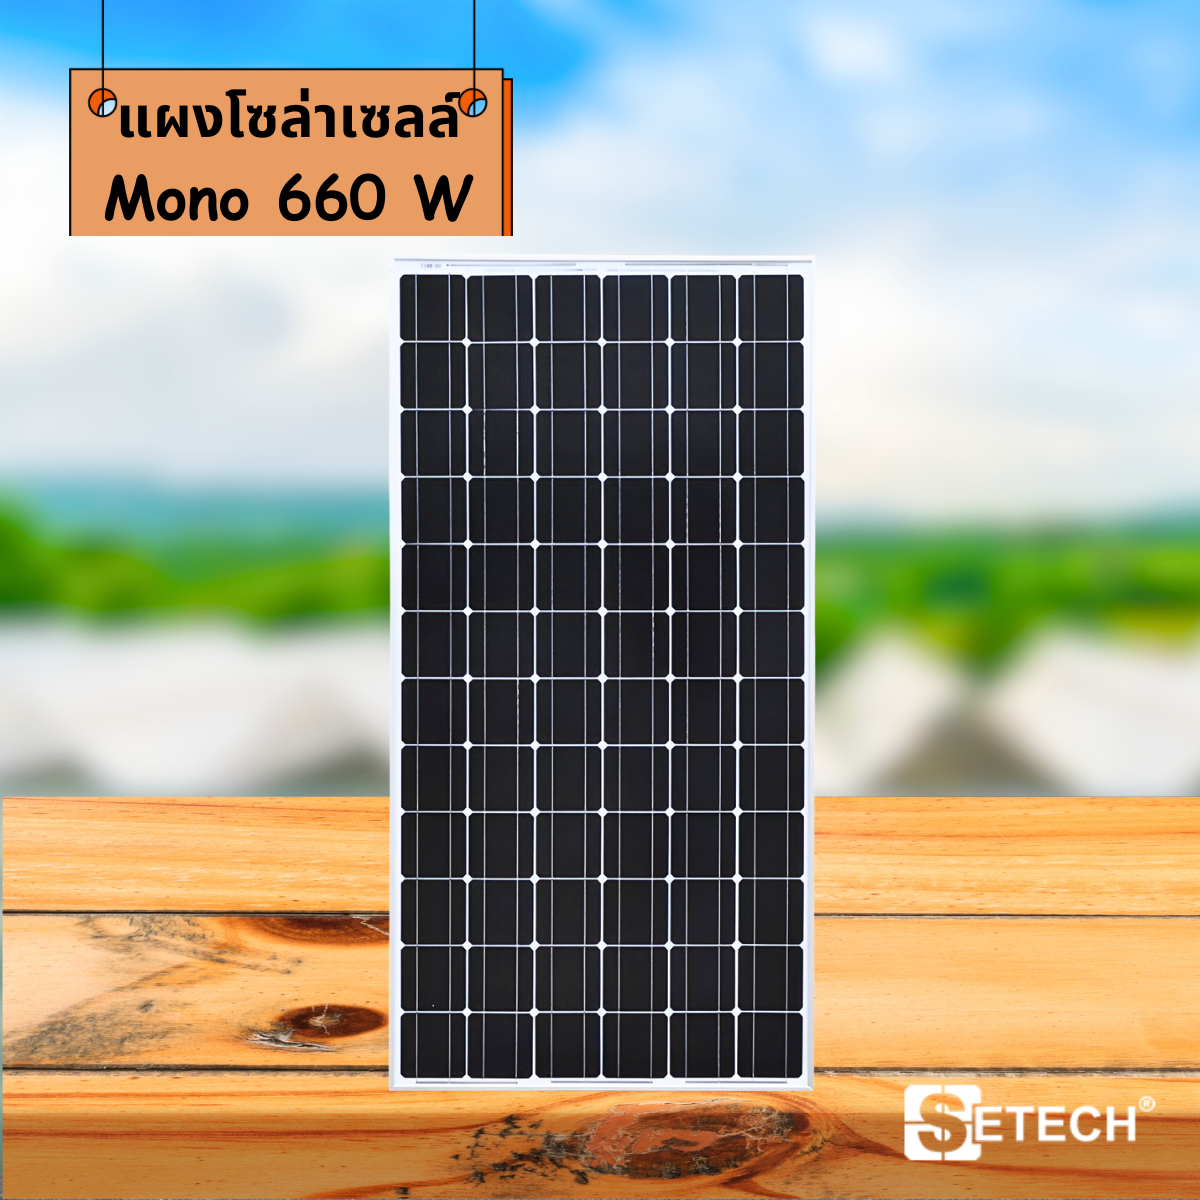 Solar panels Model Mono 660 W SETECH-SC-05 SC-05